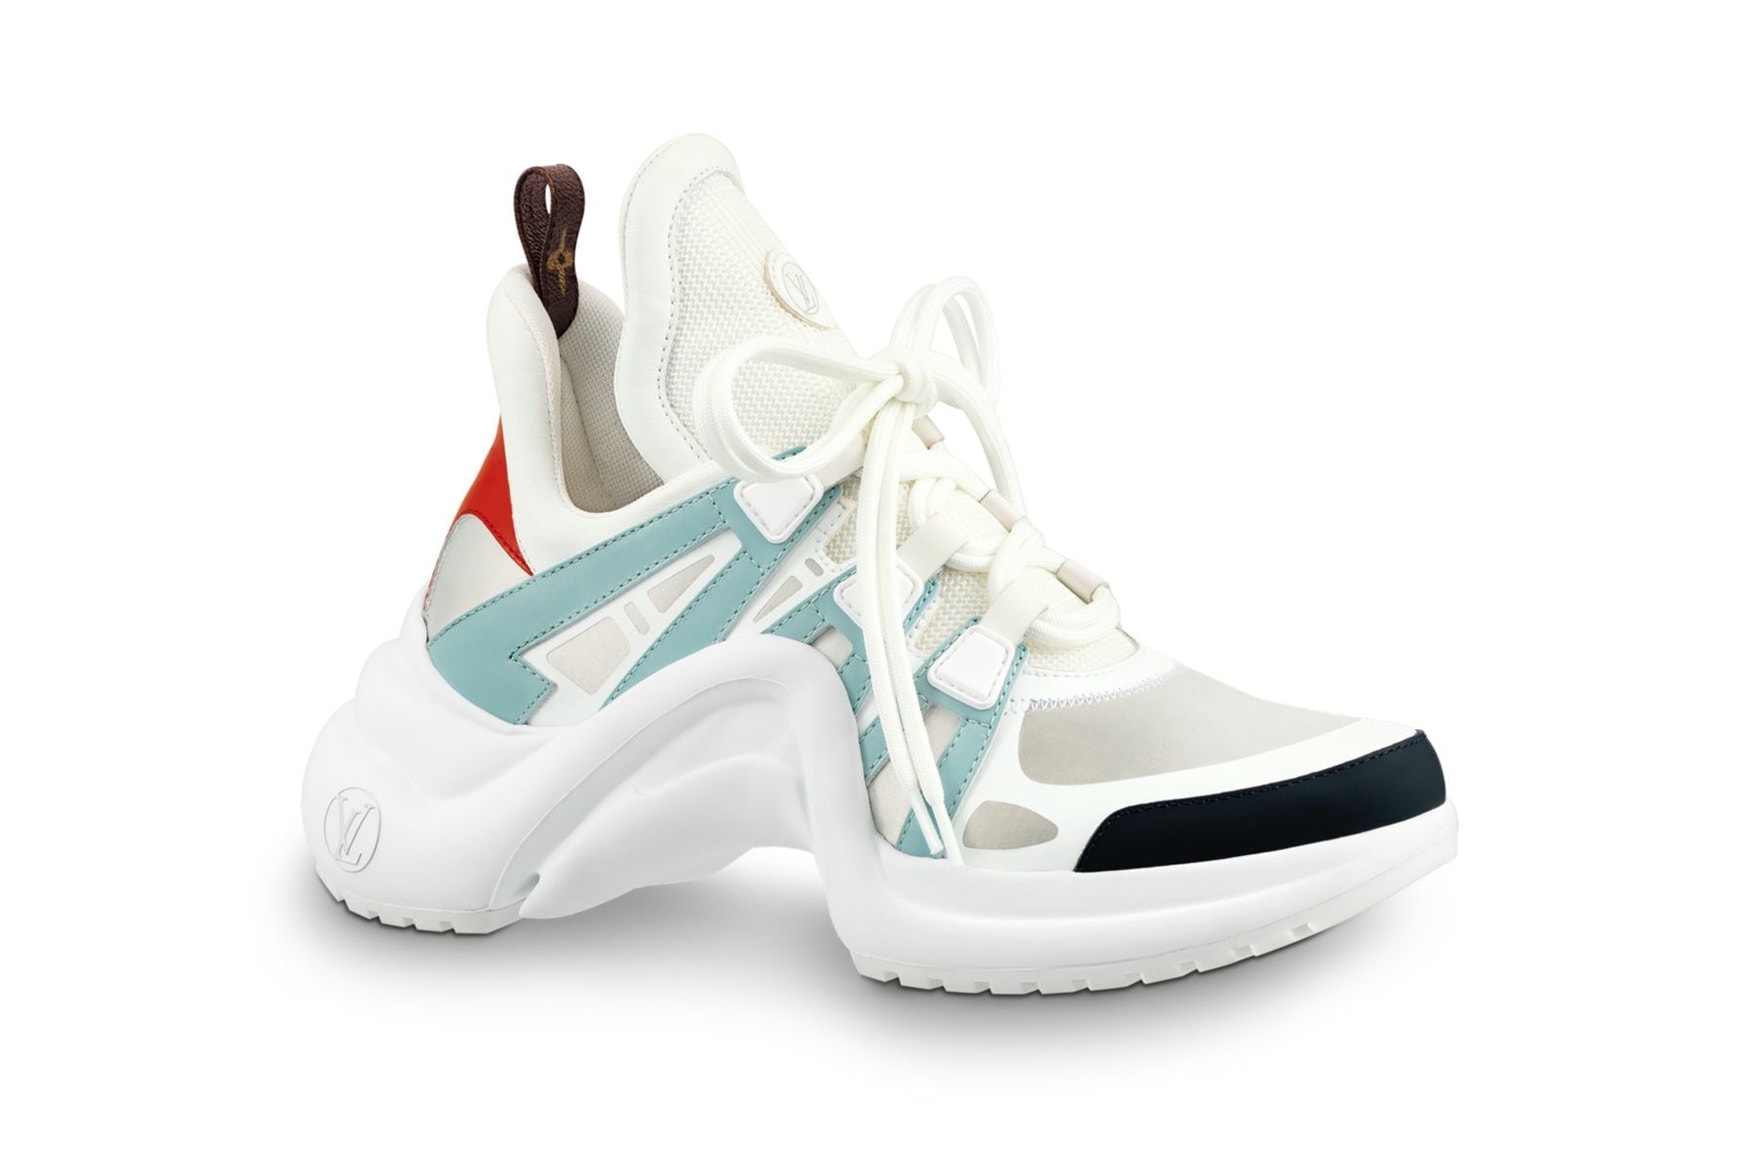 跟上醜鞋風潮 Louis Vuitton 也出 Dad Shoes  7 色齊發正式開賣